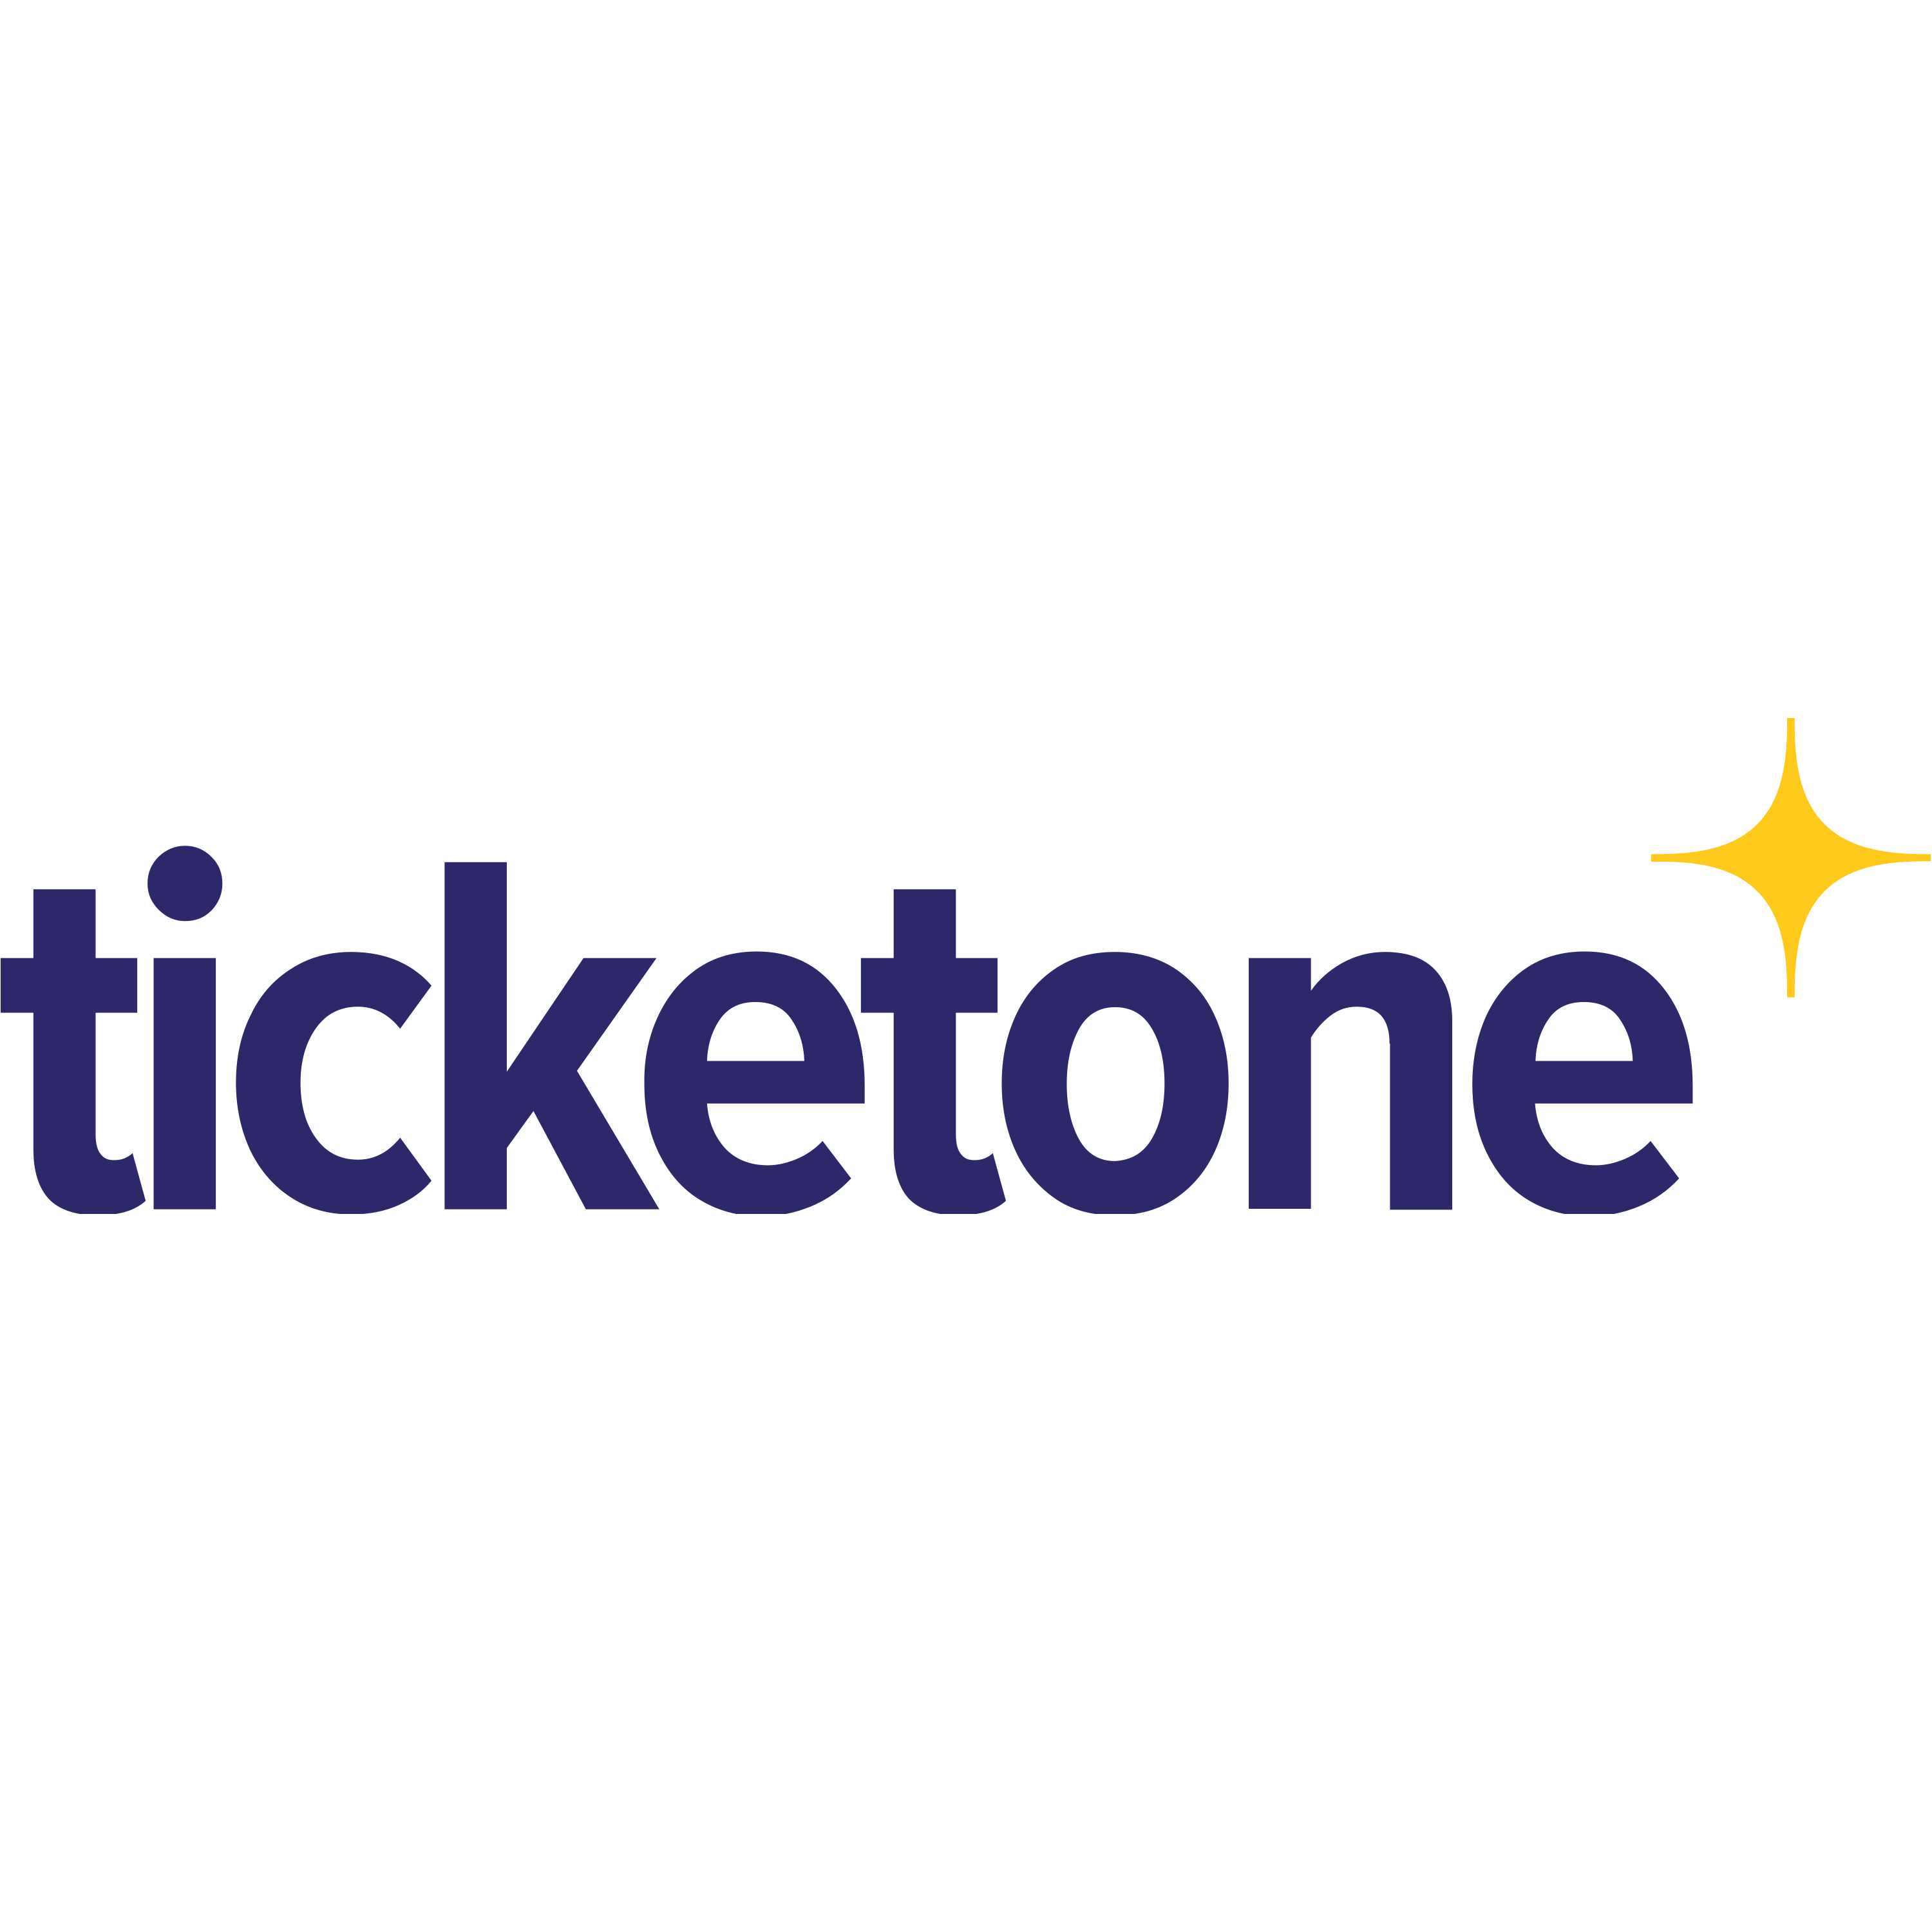 Ticketone Logo  Transparent Image